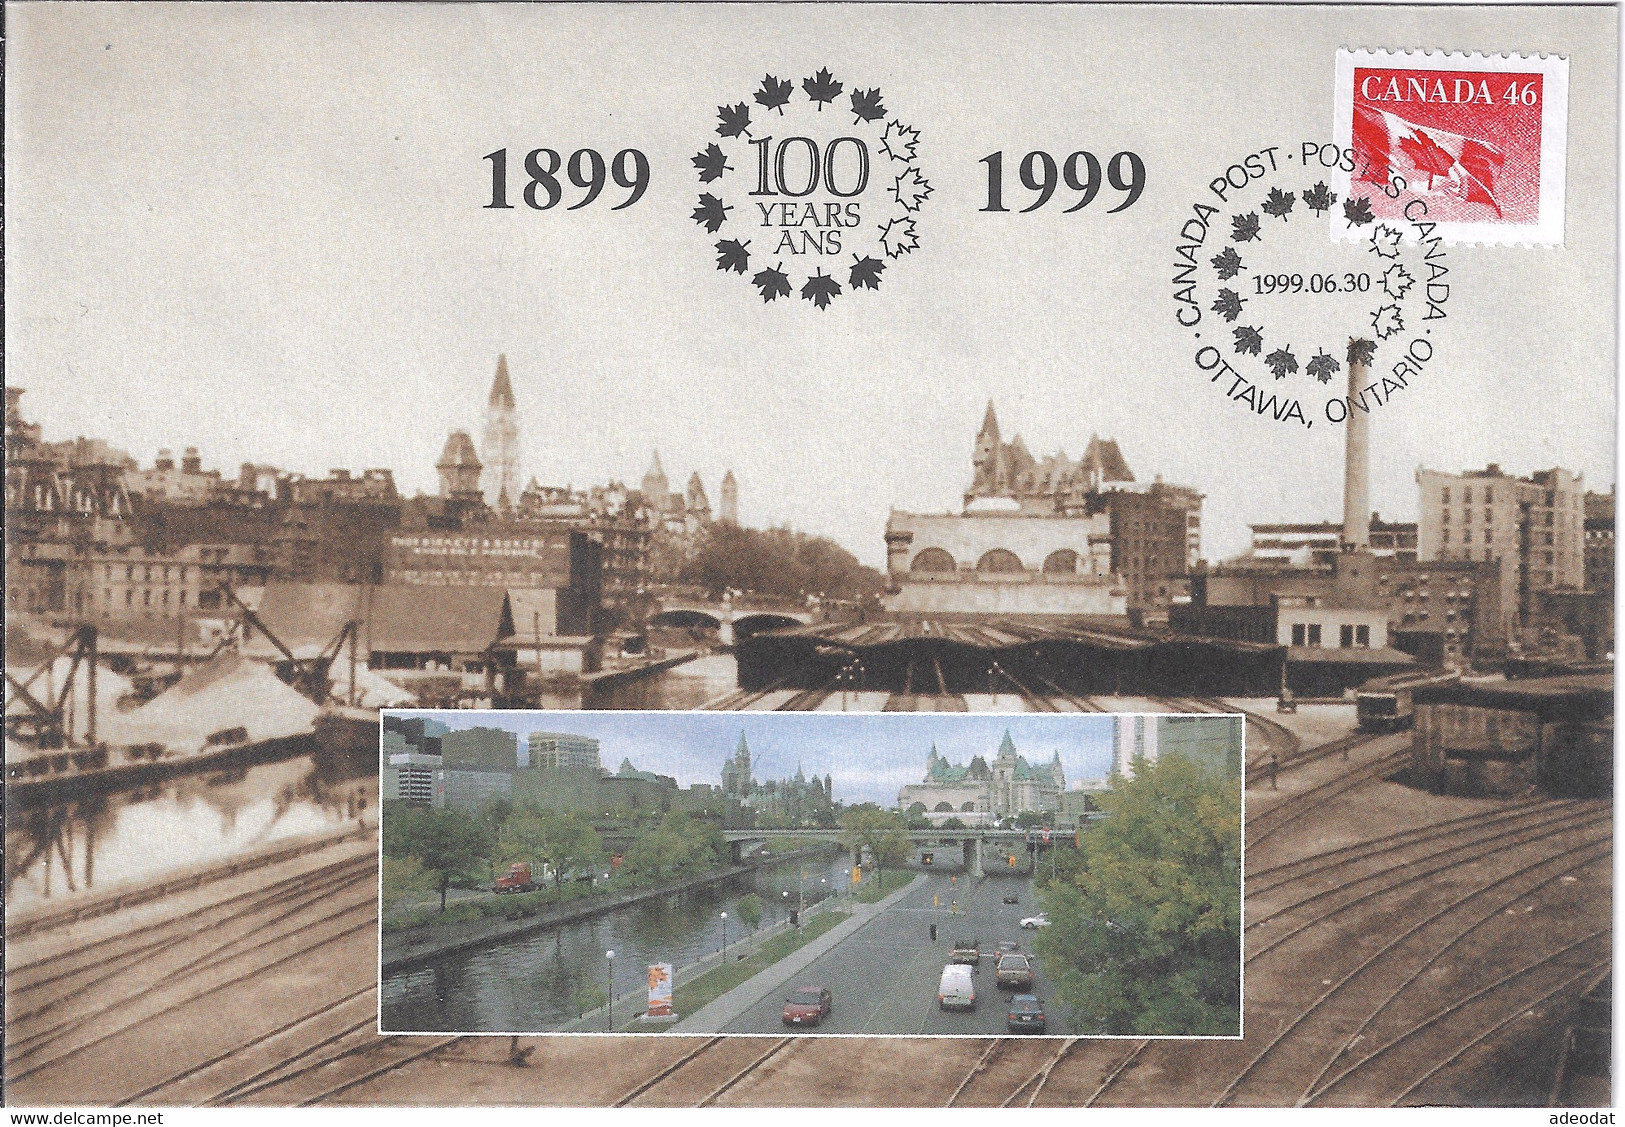 CANADA 1998 COMMEMORATIVE COVER OTTAWA - Commemorative Covers